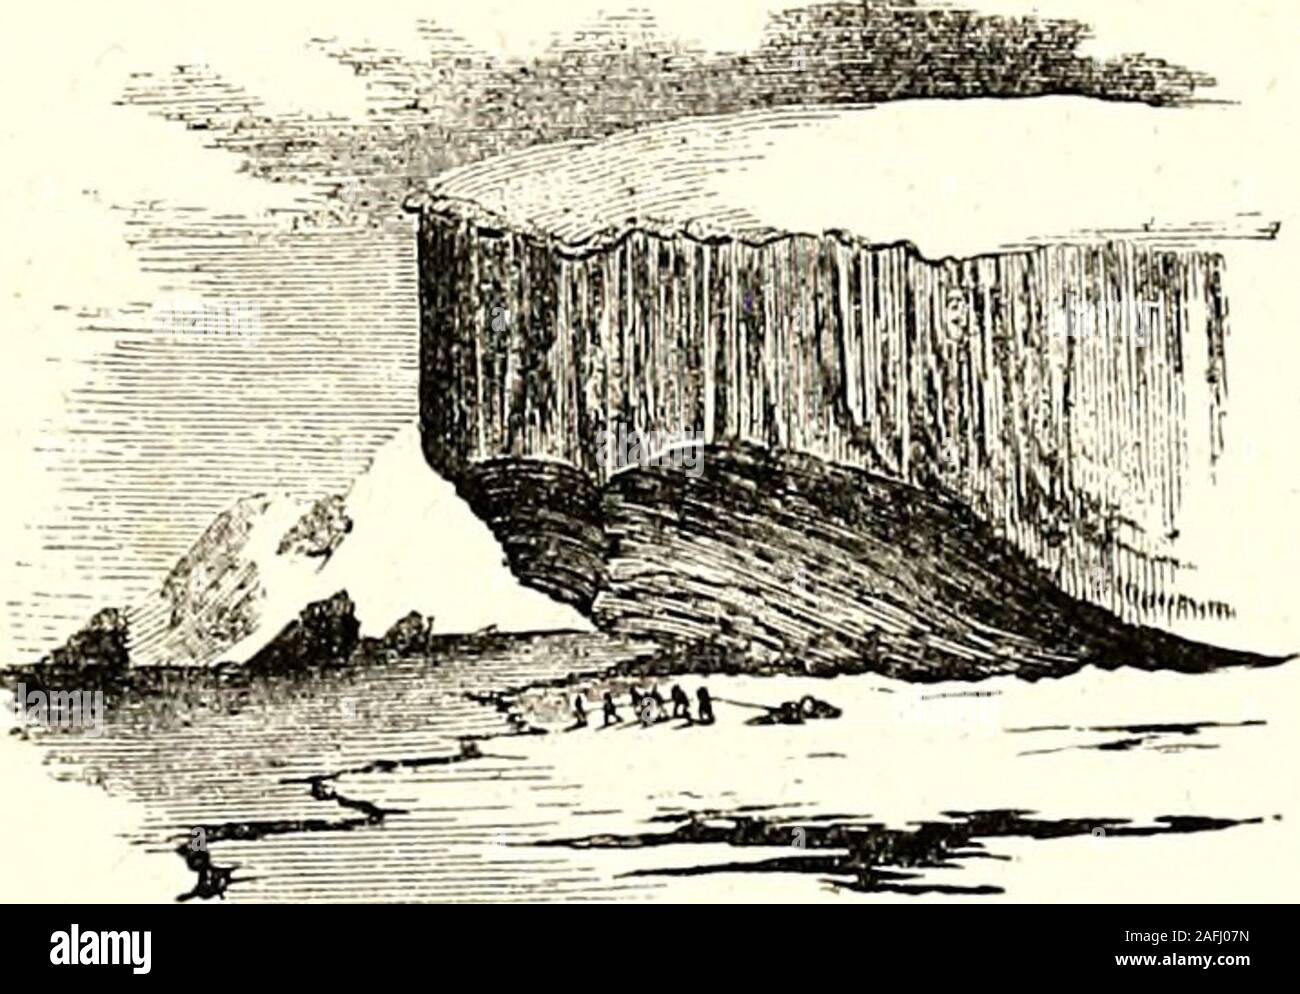 . Arktis Erkundungen: Die zweite Grinnell Expedition auf der Suche nach Sir John Franklin, 1853, '54, '55. ICE-Gürtel der frühen Winter. Innerhalb von zwanzig Meter von ihr und ihrem stern wurde durch ihren Druck sensiblylifted. Wir hatten in der Tat, PUZ-zled für sechs Wochen vor, mit der Bemerkung, dass die floewe in allmählich schwinden von theshore eingebettet waren, und hatte die Beobachtung der Danesof Upernavik erinnerte daran, dass Ihre Netze waren manchmal forcedaway merkwürdig aus dem Land. Die Erklärung ist. EXPEDITION vorbereiten. 179 vielleicht, in die alternative Aktion Der tidesand Frost gefunden zu werden; aber es wäre Stockfoto